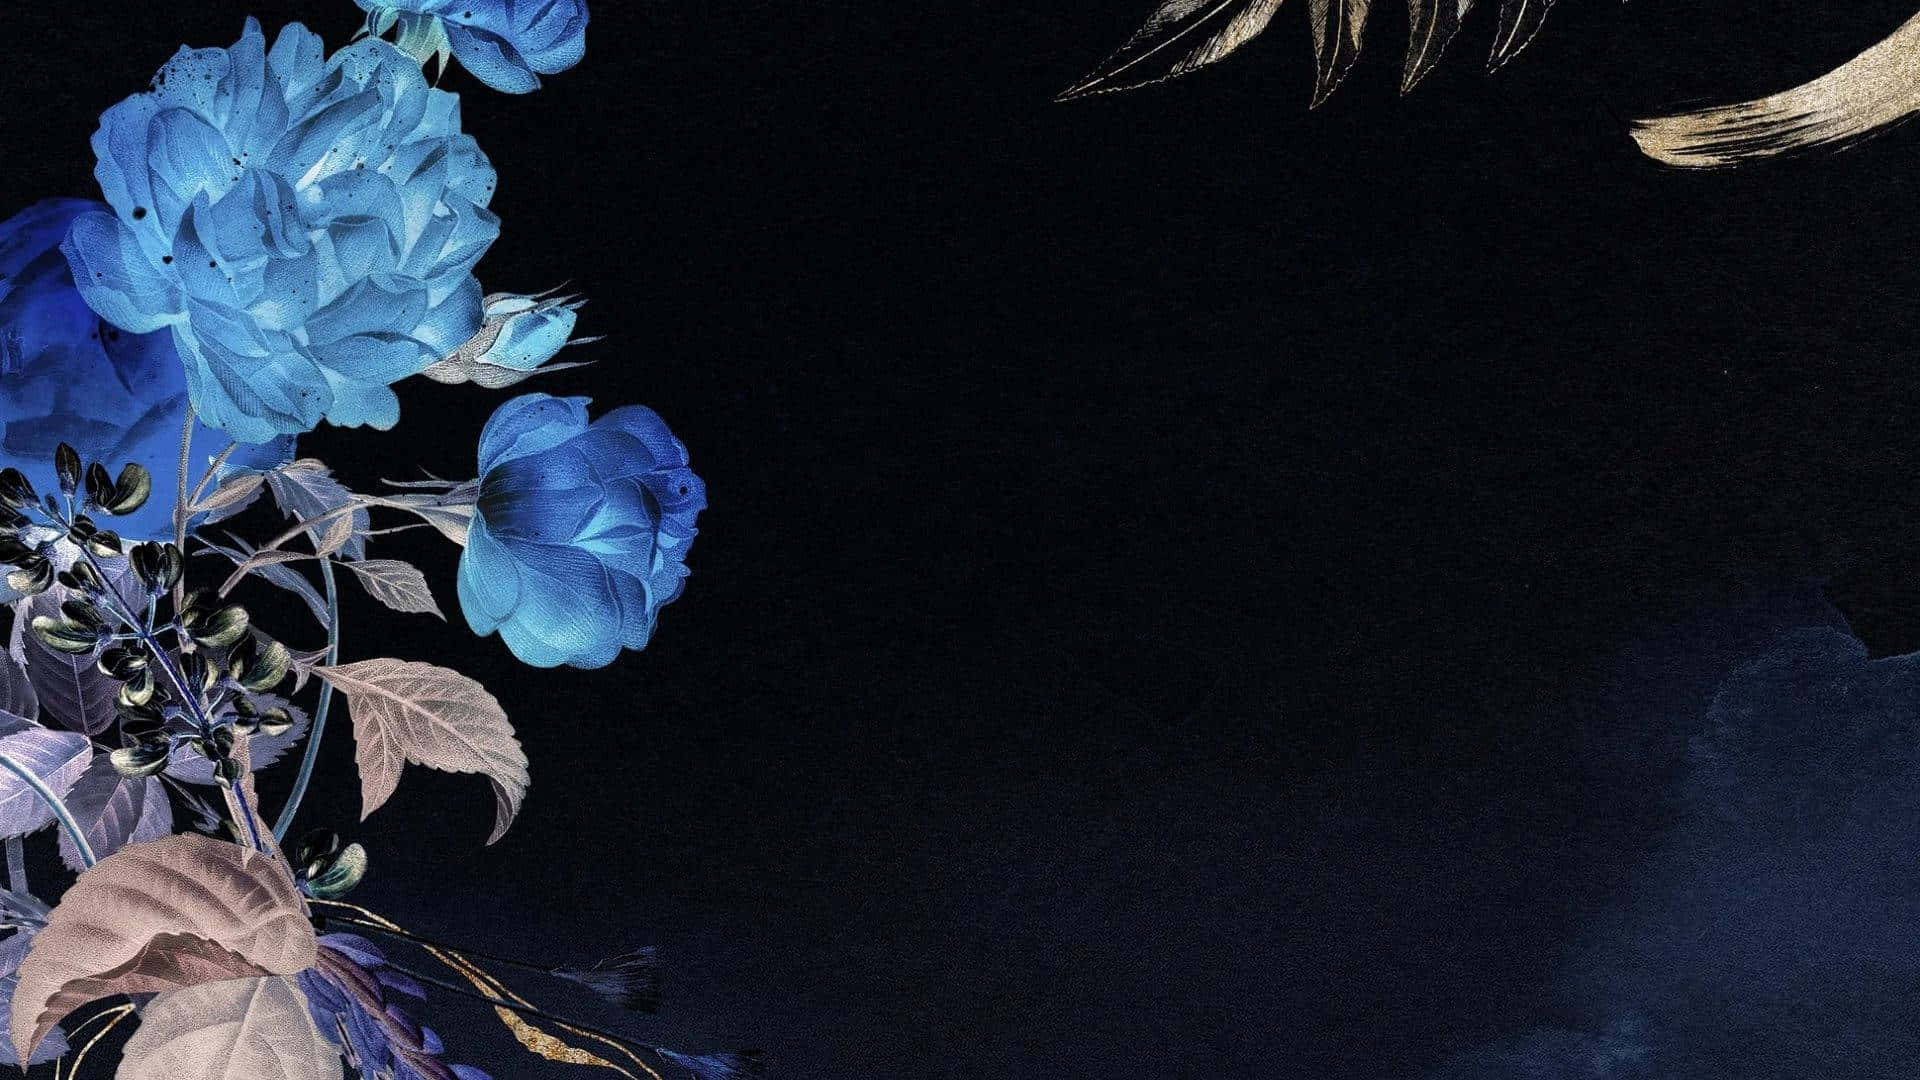 Apprécier la beauté des fleurs bleues pour apporter un peu de joie esthétique dans votre vie. Wallpaper